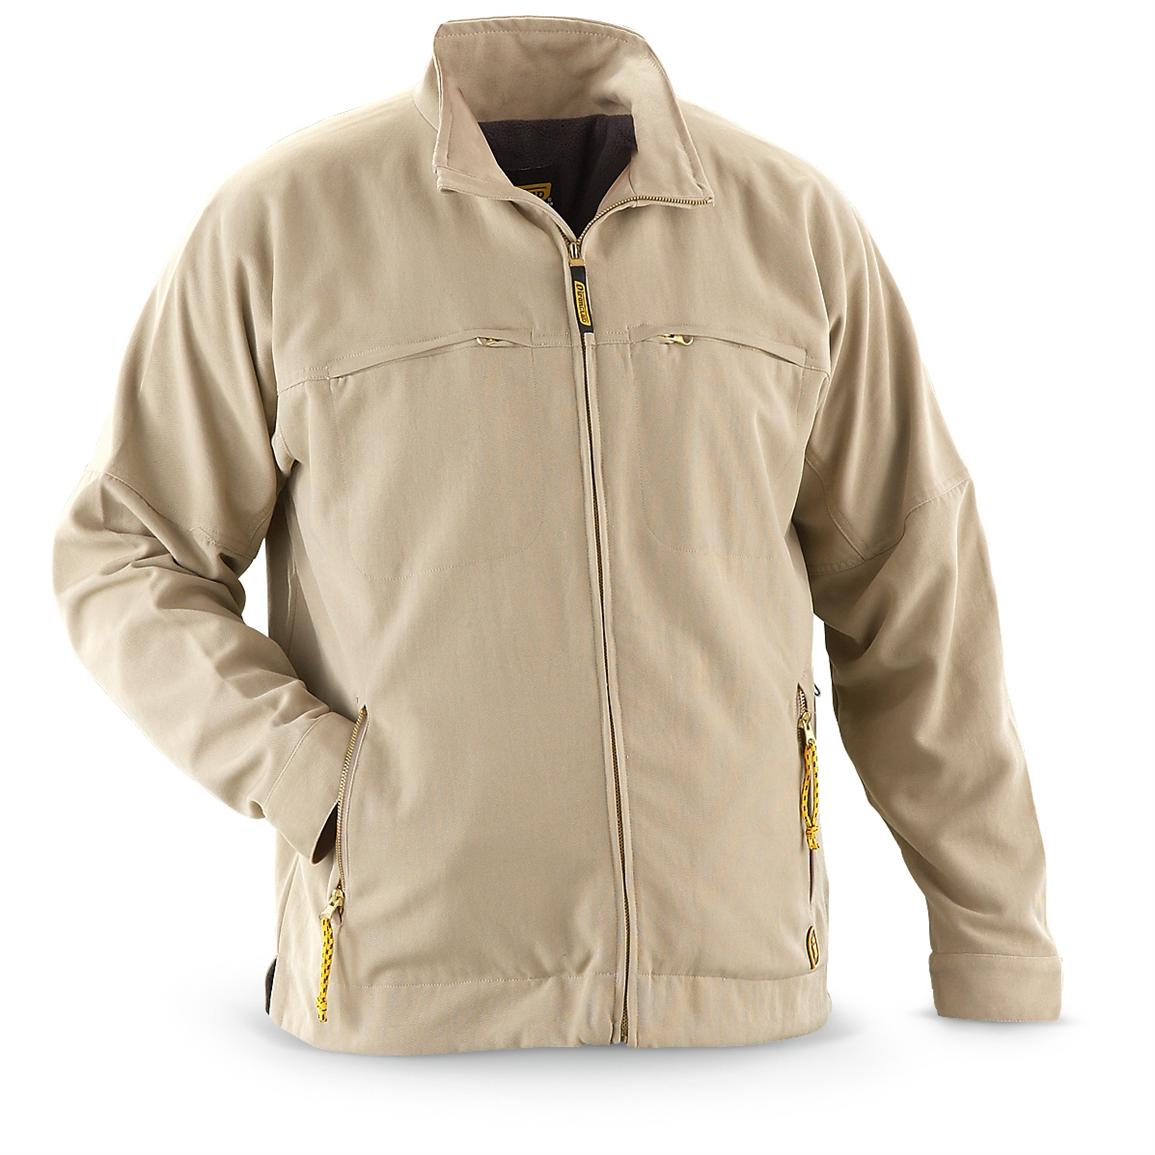 Ironclad® Work Jacket, Khaki - 215938, Insulated Jackets & Coats at ...